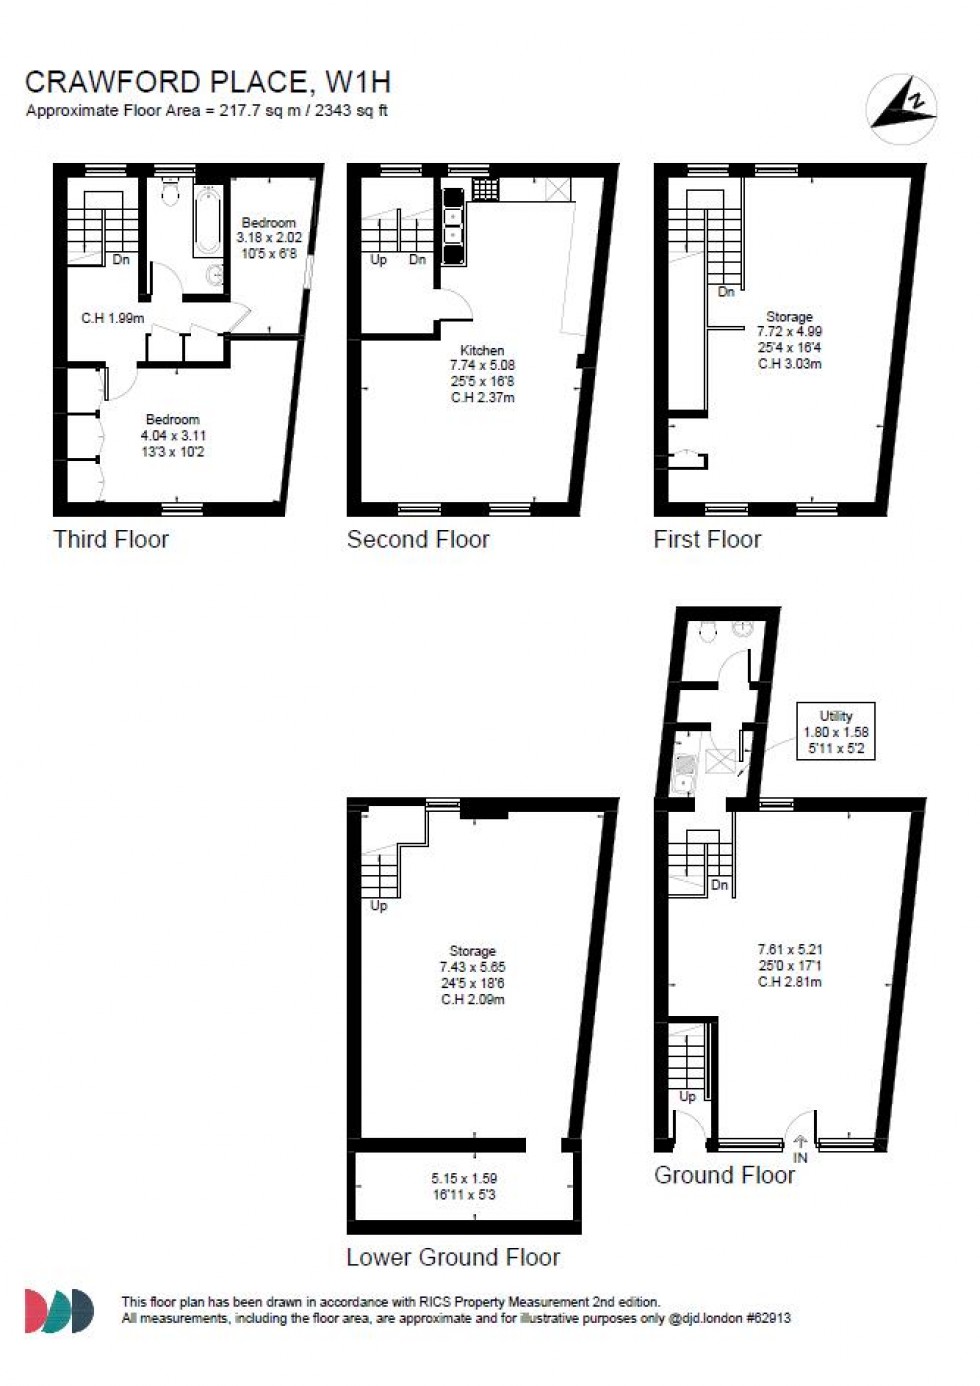 Floorplan for Crawford Place, Marylebone W1H